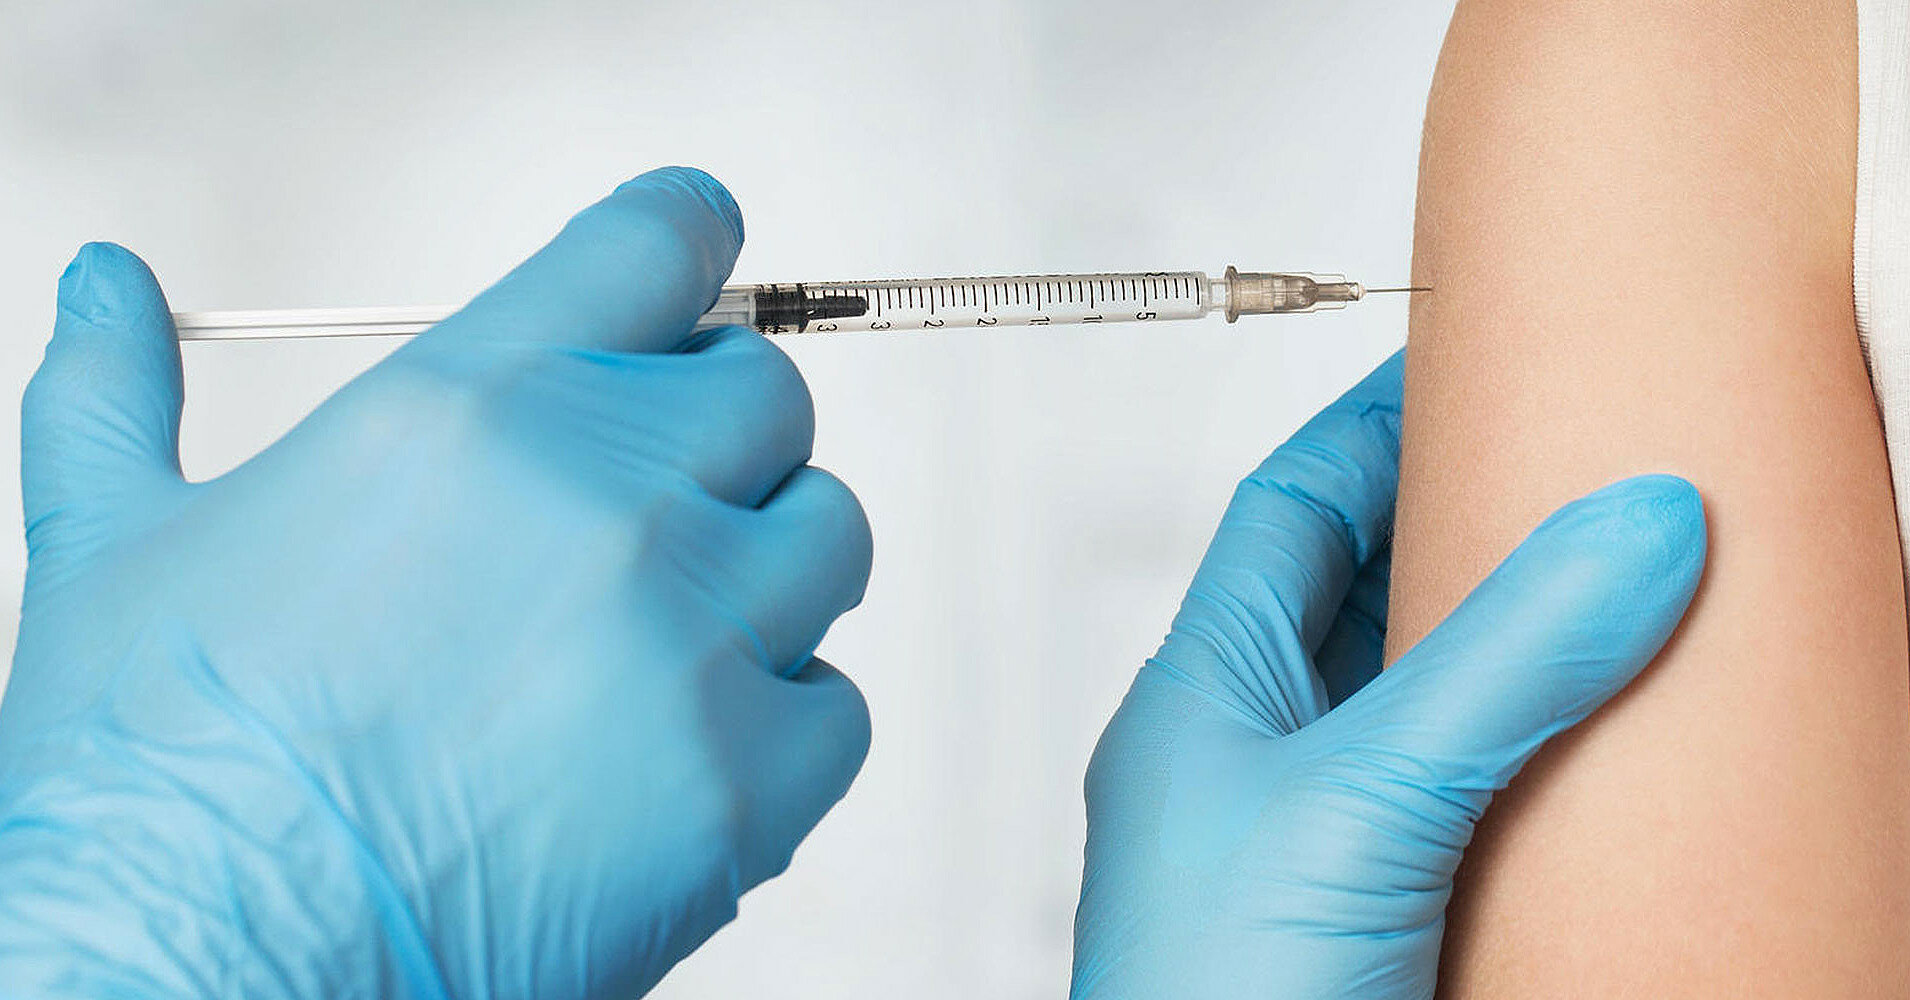 В США одобрили бустерные прививки вакциной Pfizer для подростков